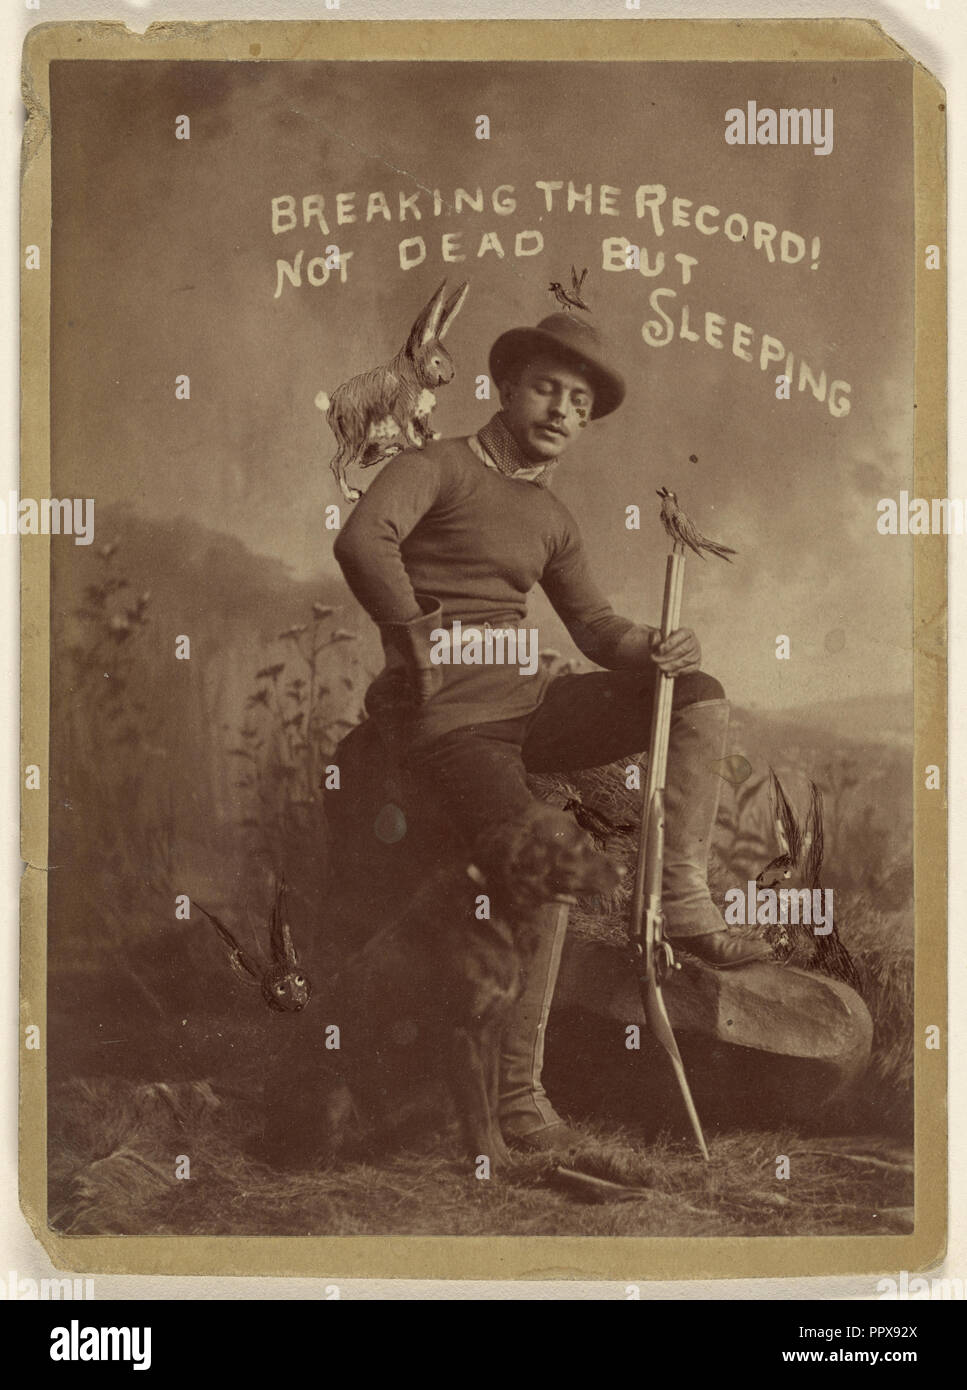 Rompiendo el récord. No está muerto, sino durmiendo; American; 1880; Albúmina imprimir plata Foto de stock